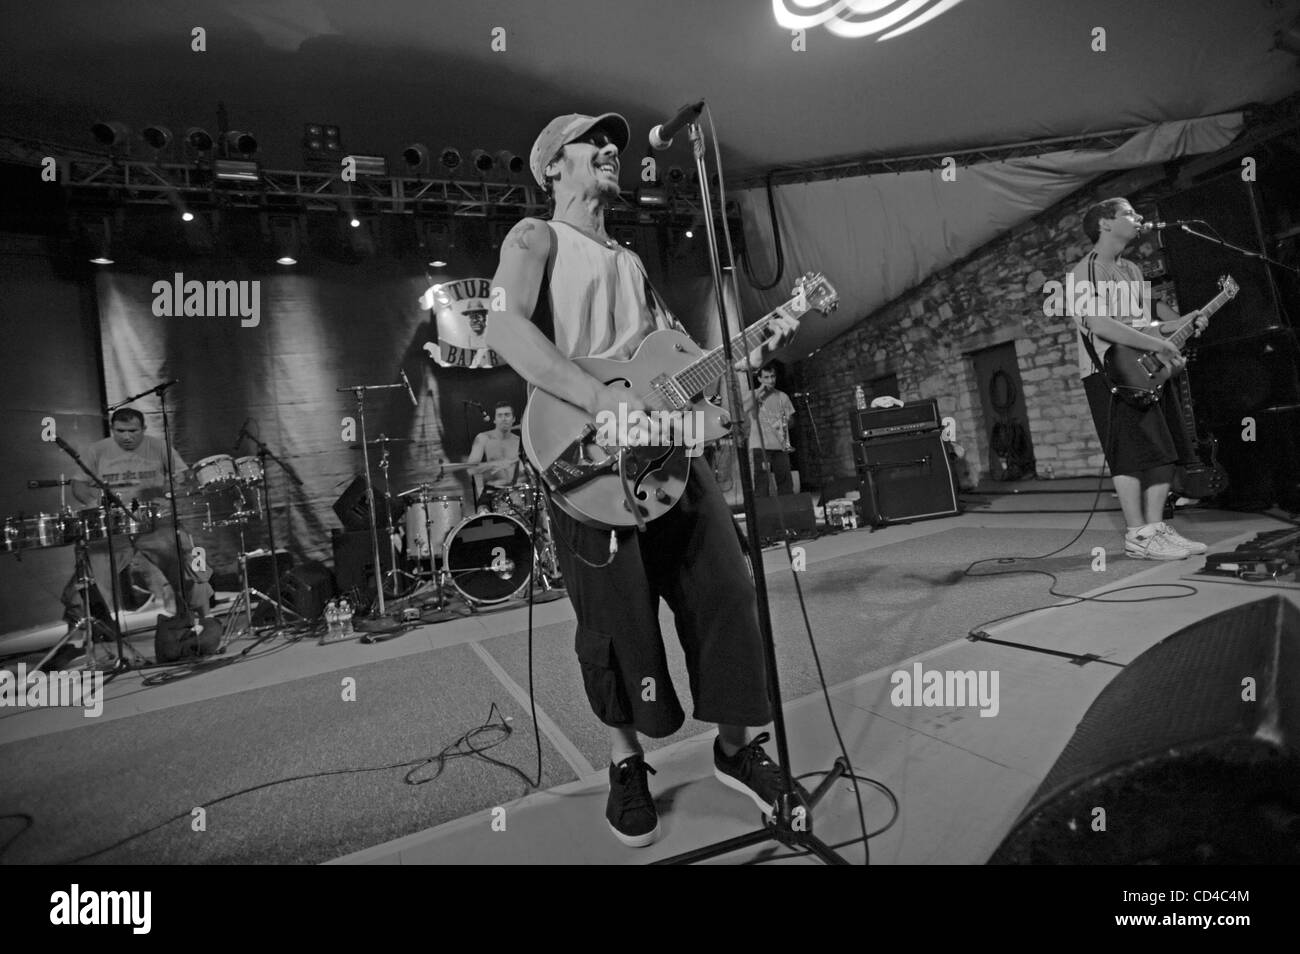 Septiembre 25, 2008 - Austin, Texas, EE.UU. - cantante / Guitarrista MANU  CHAO actúa en directo en su gira 2008 hace una parada en Stubbs Bar B Que  ubicado en el centro